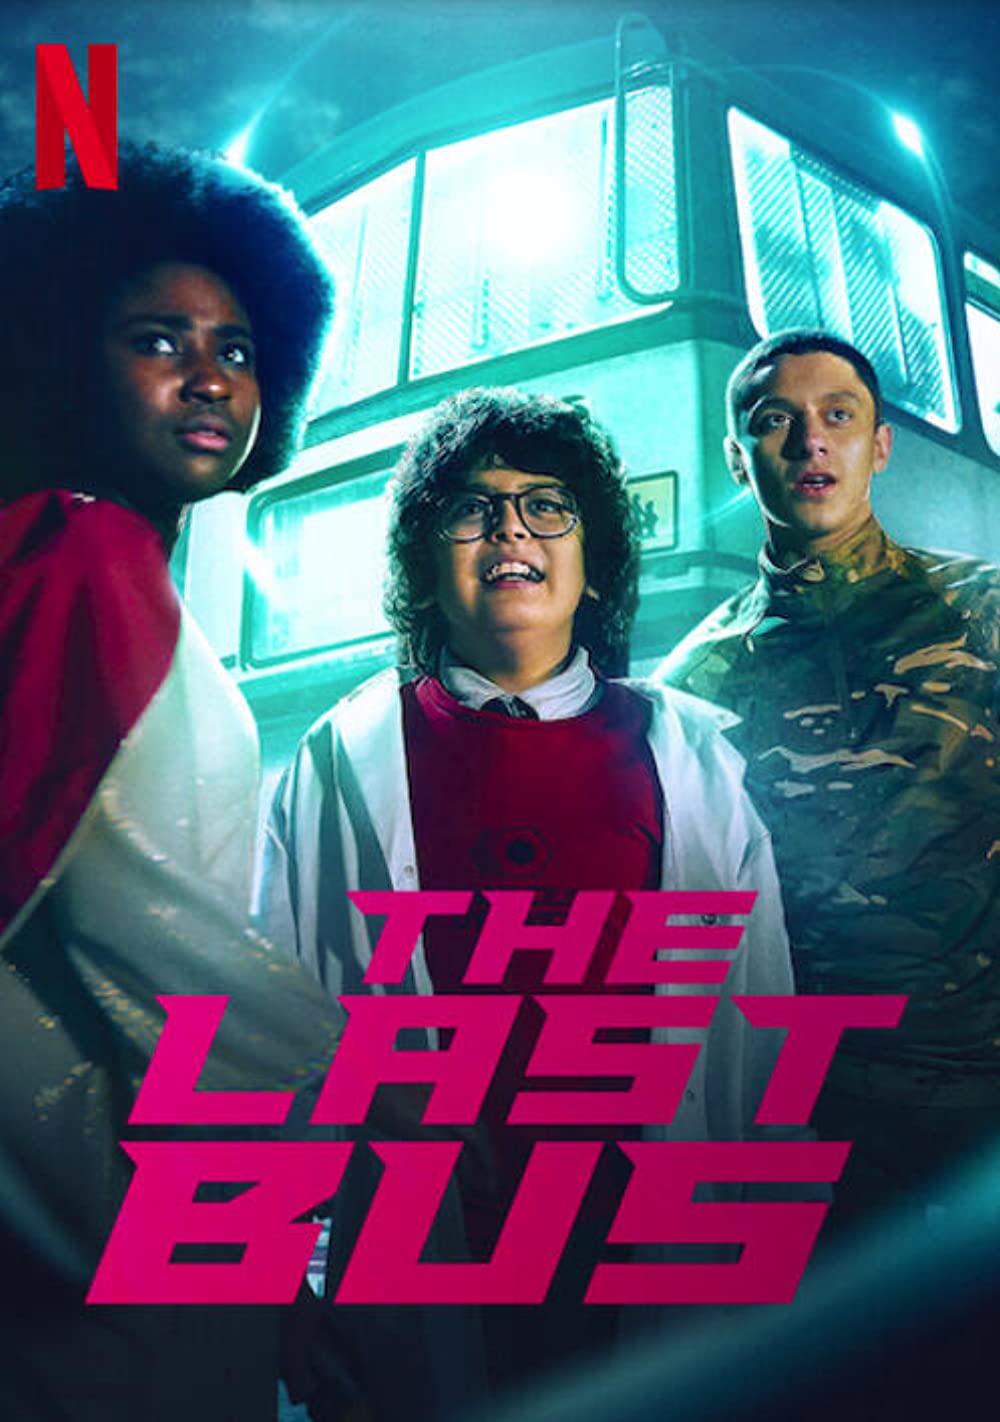 Is “The Last Bus Season 1” on Netflix